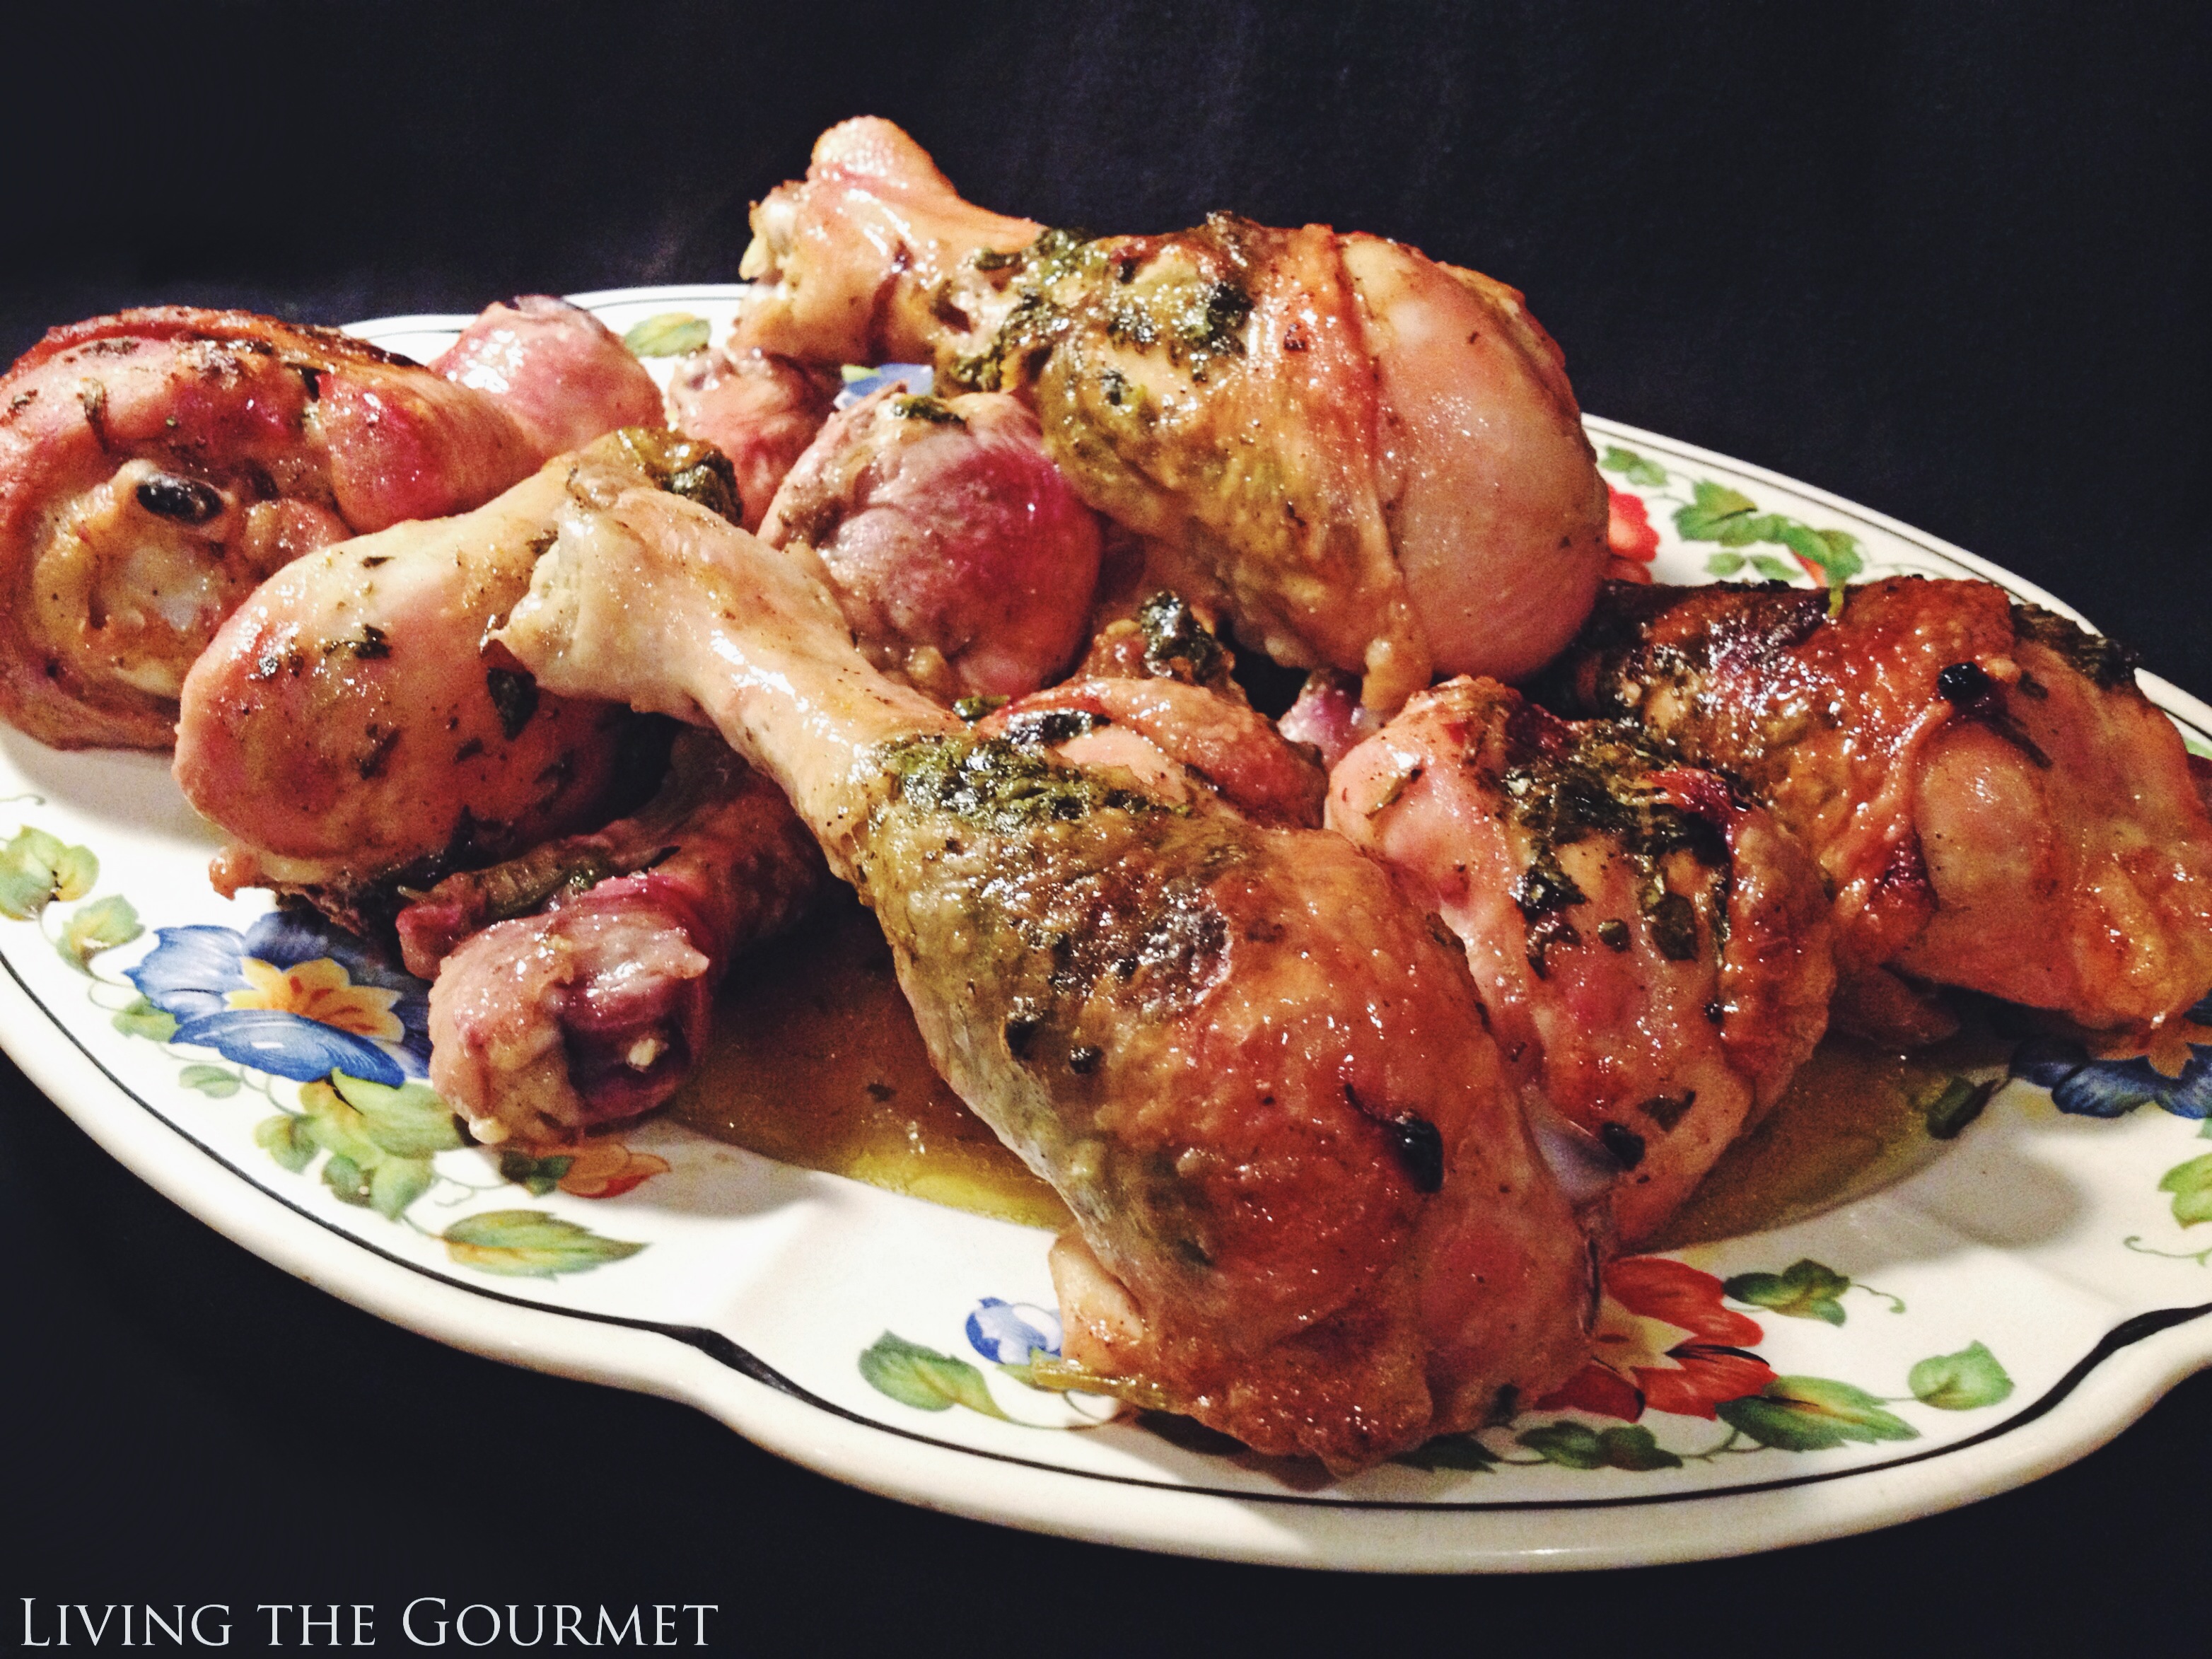 Living the Gourmet: Stuffed Chicken Legs